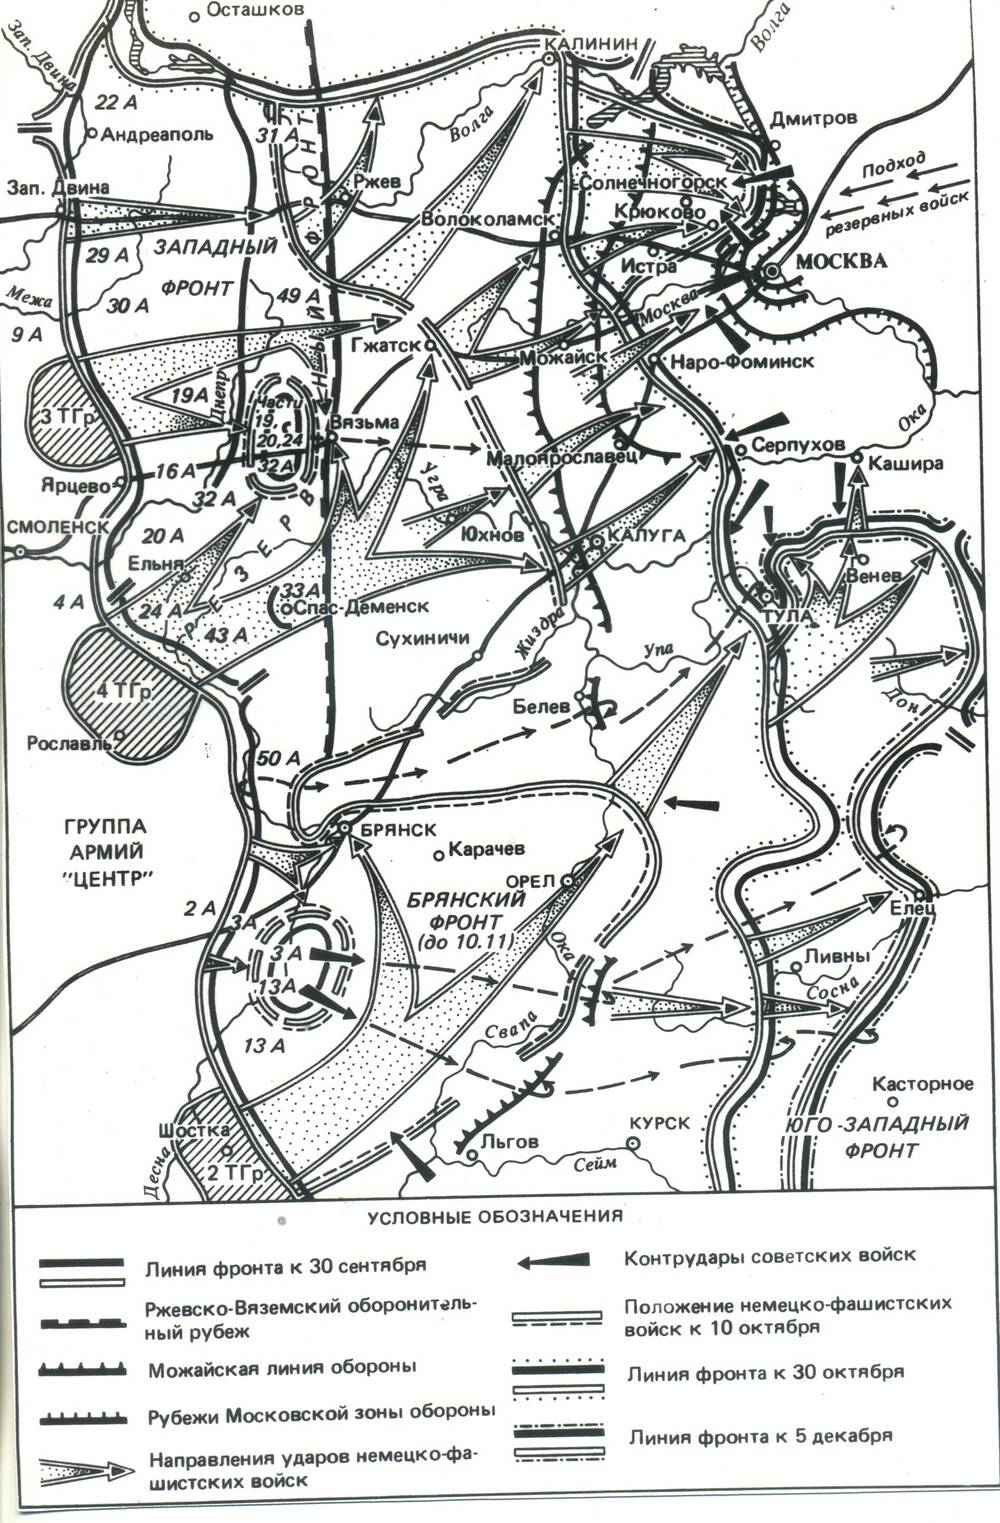 Фотокопия карты с условными обозначениями, расположения войск с 30 сентября по 5 декабря 1941 года